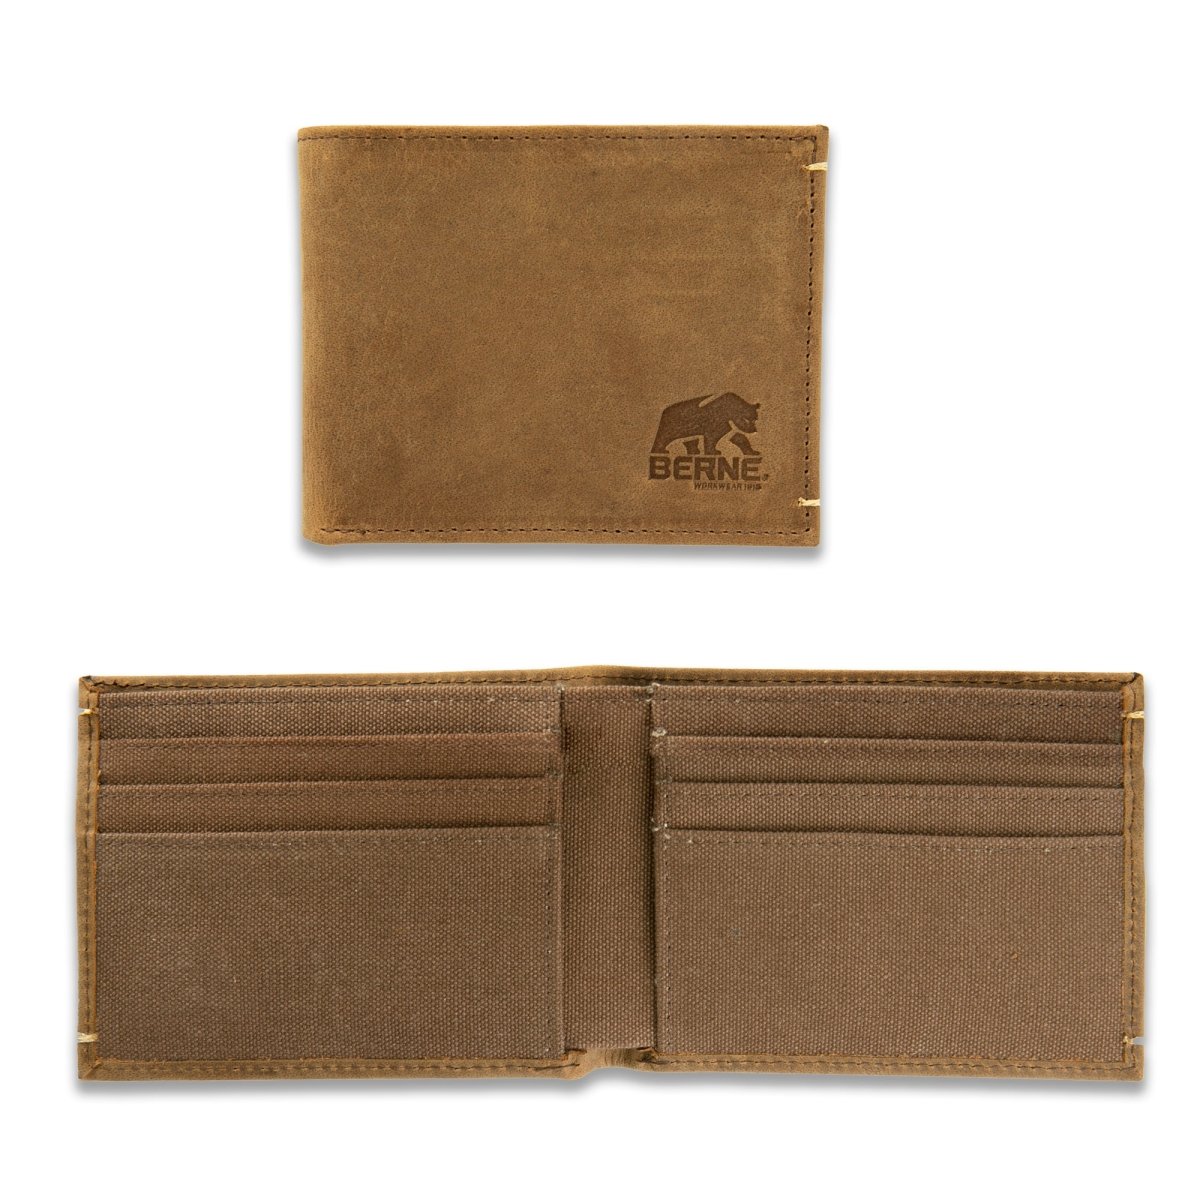 Berne Distressed Leather Wallet - Berne Apparel